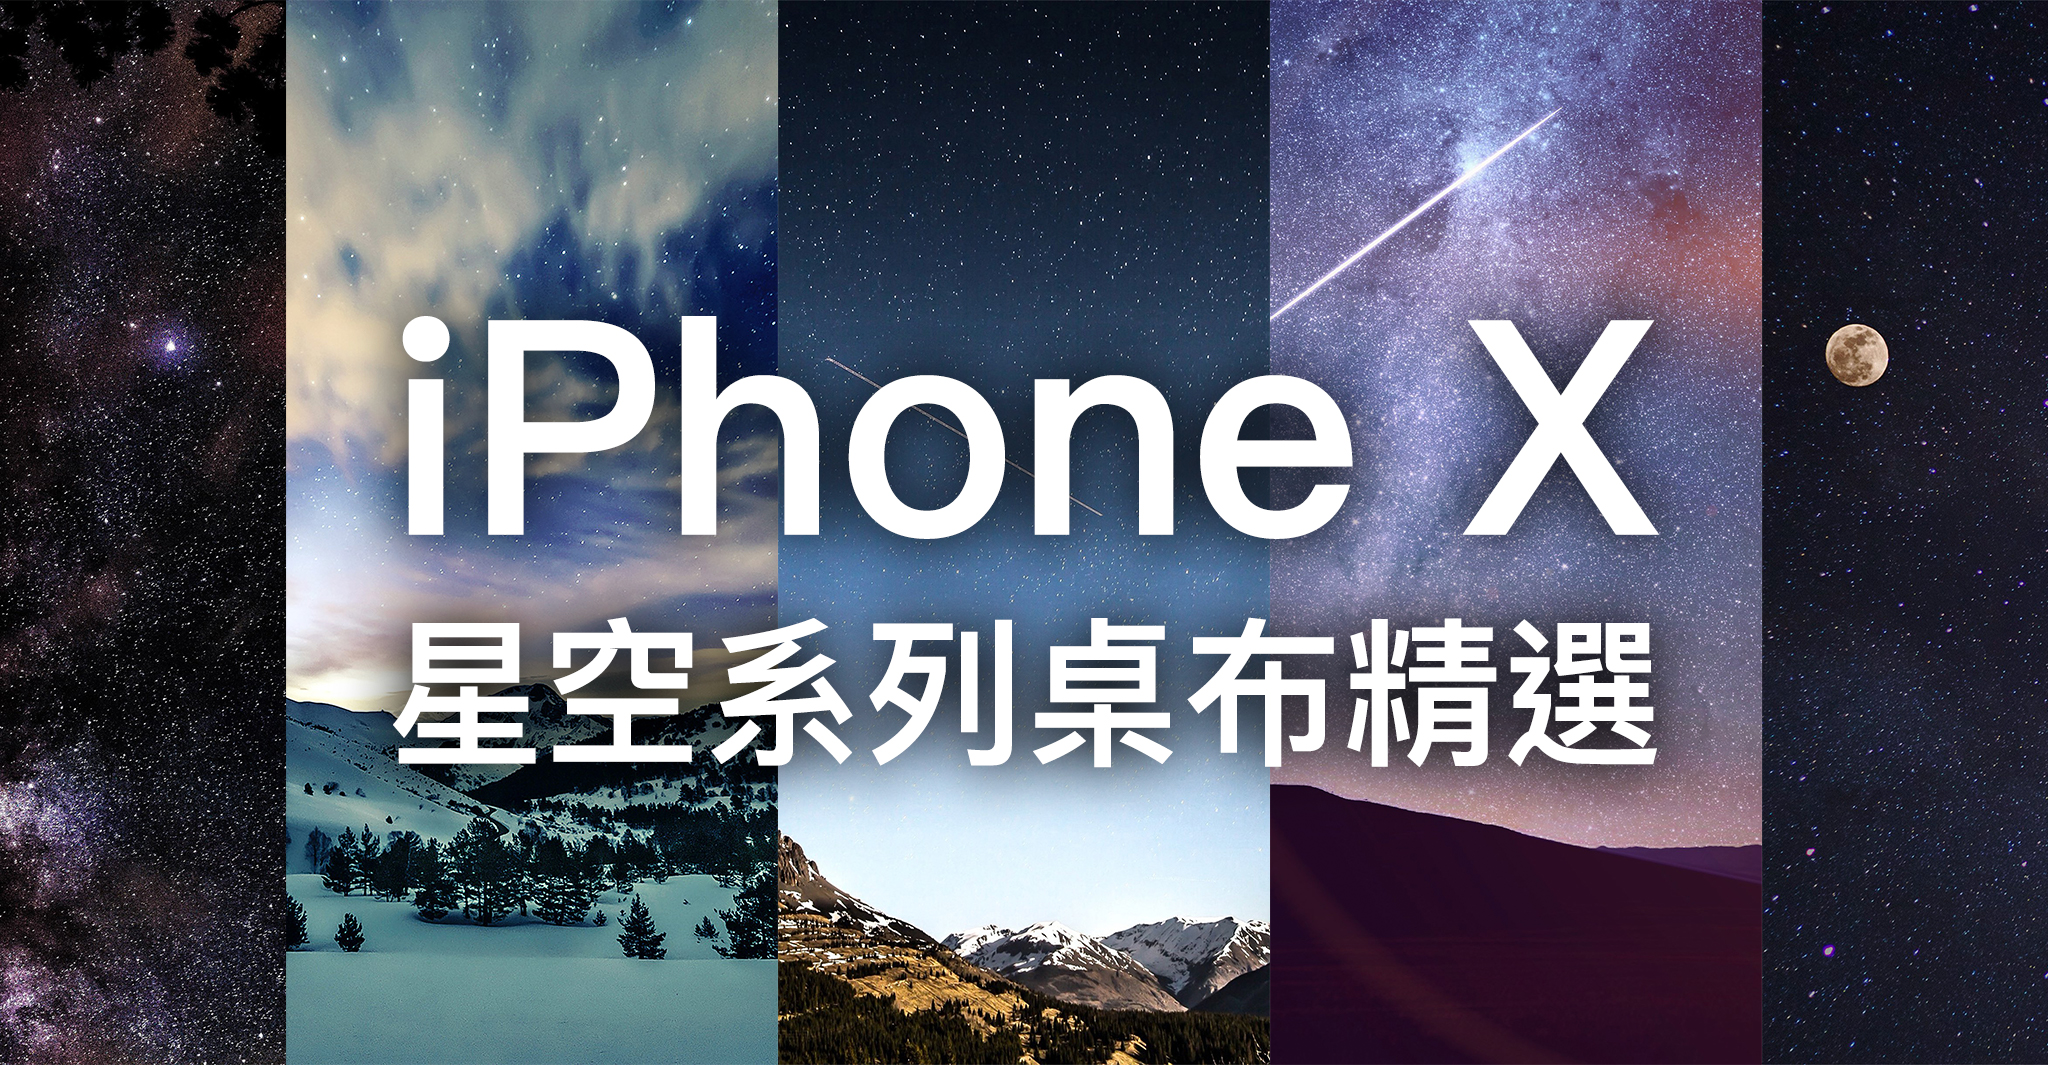 Iphone X 桌布下載 精選20 張星空系列iphone X 桌布 蘋果仁 你的